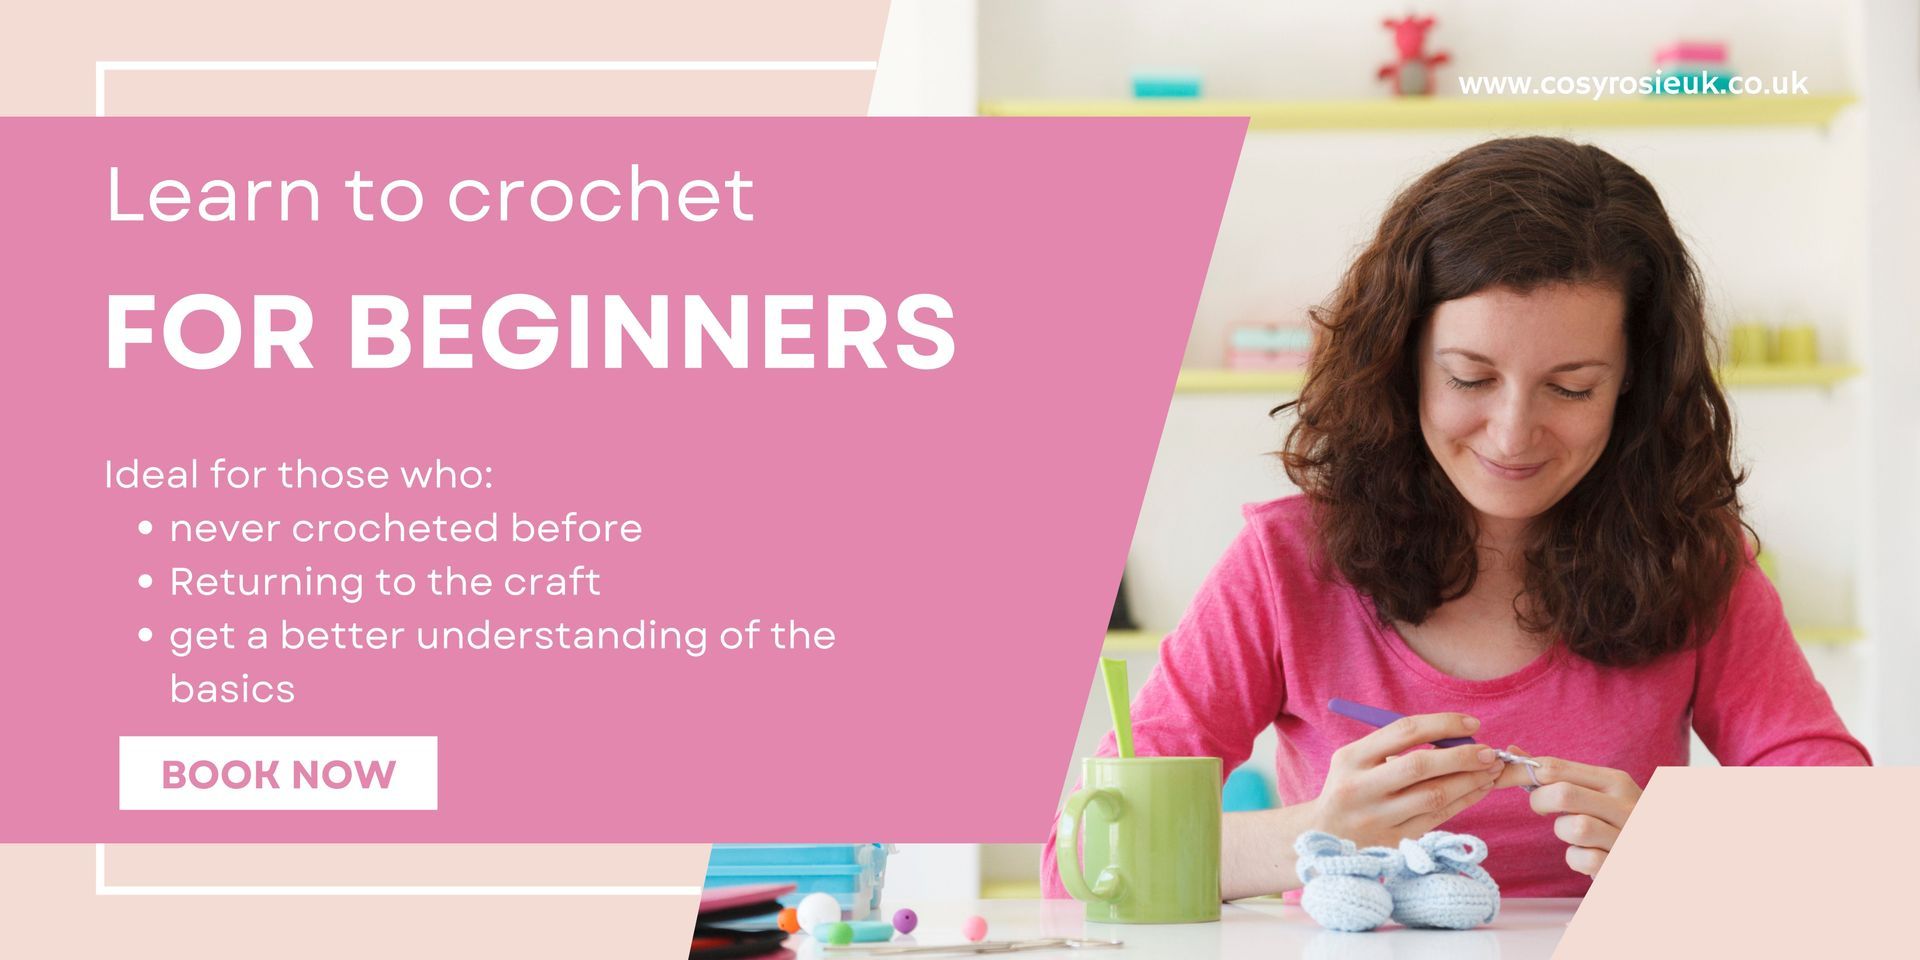 Learn to crochet Workshop in Northampton